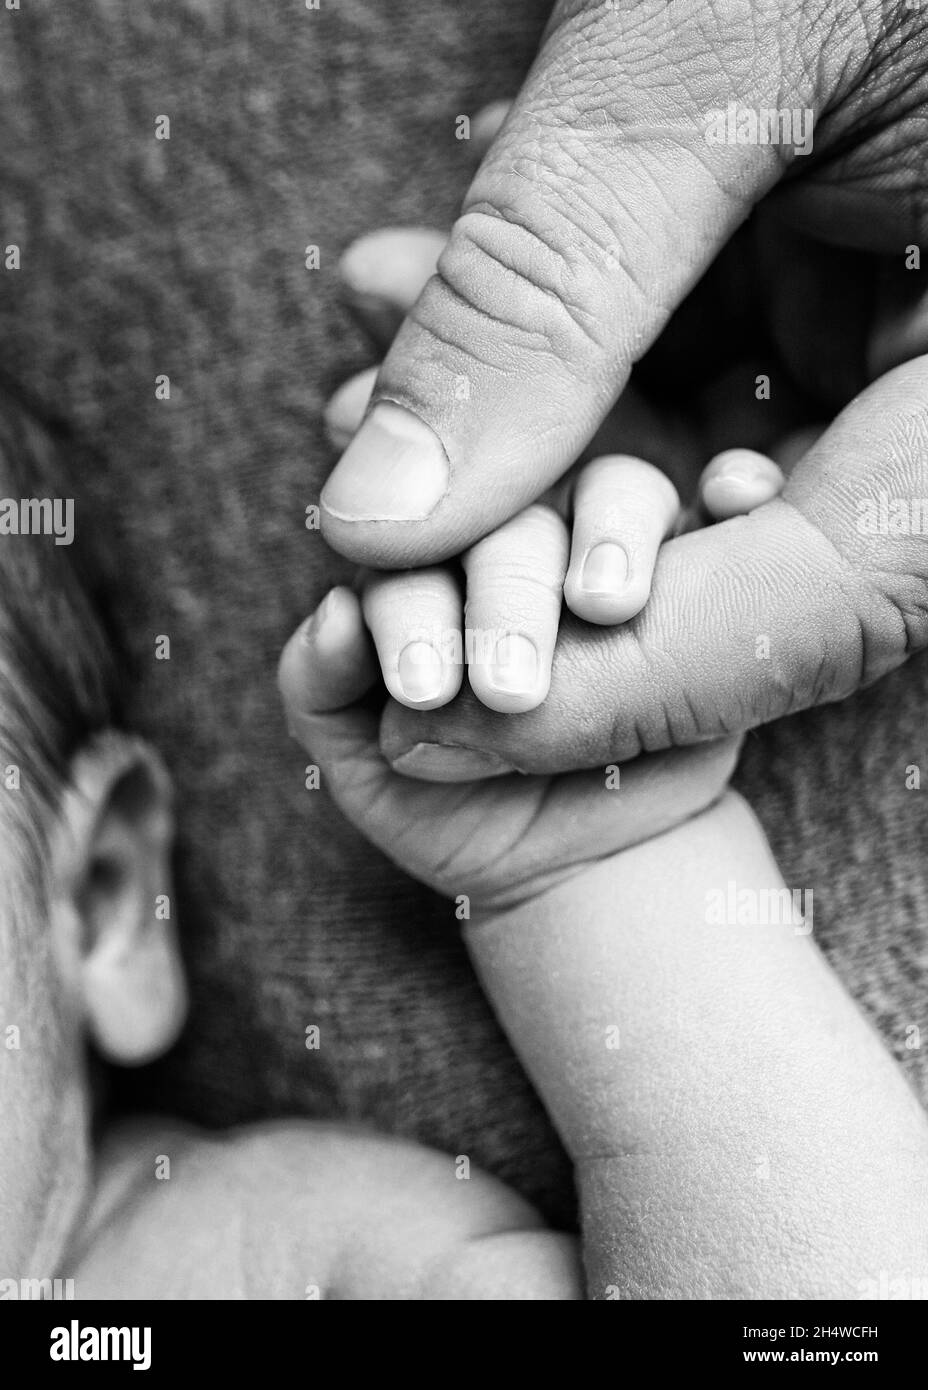 Ein neugeborenes Kind hält mit seiner Hand, Finger die Hand, die Finger eines Elternteils, Vaters oder einer Mutter. Schwarzweiß-Foto. Stockfoto